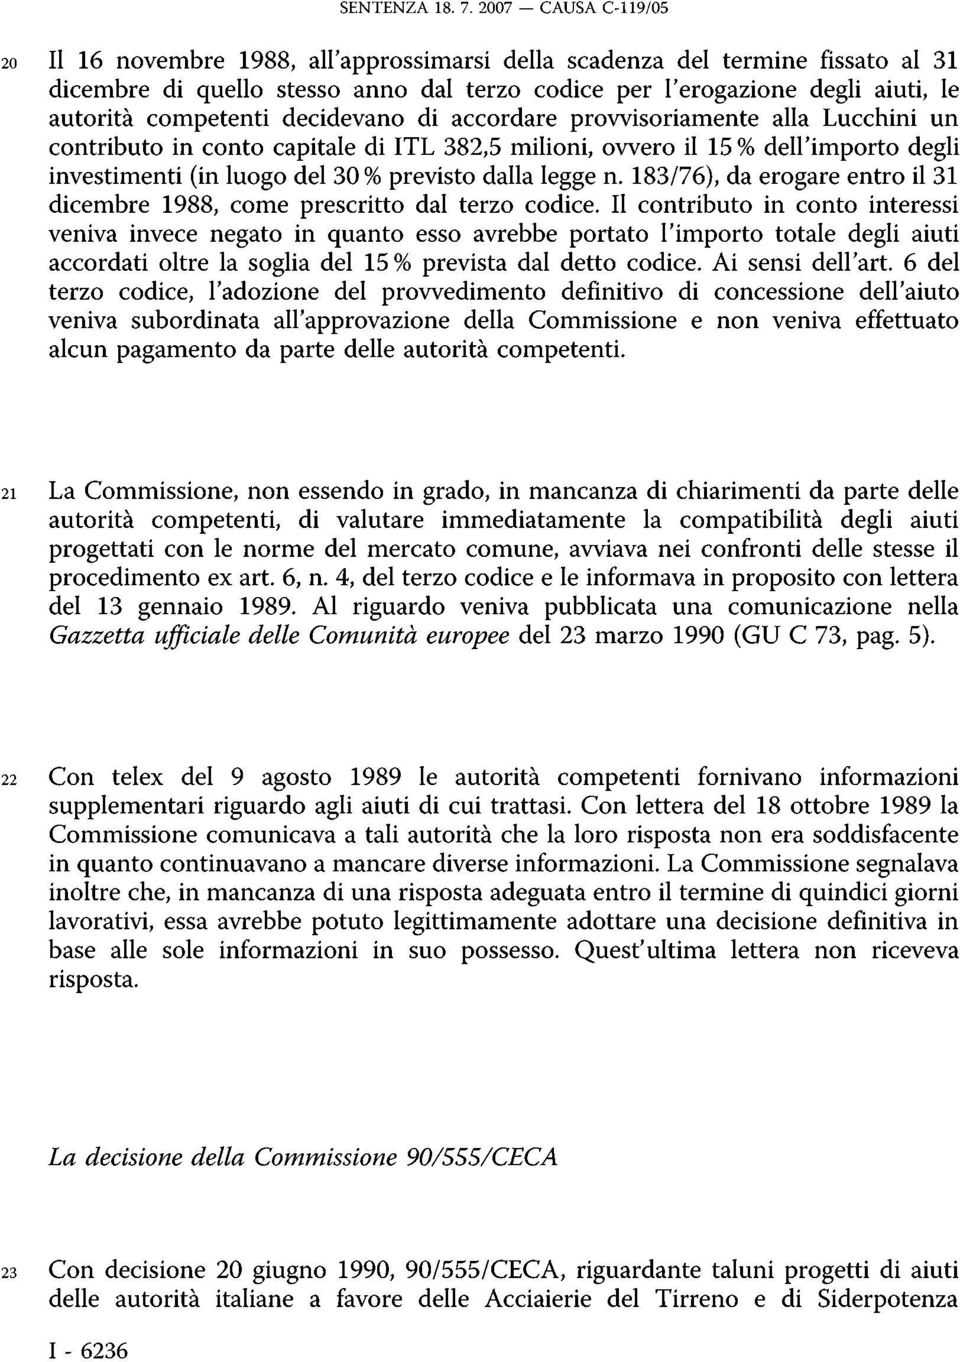 competenti decidevano di accordare provvisoriamente alla Lucchini un contributo in conto capitale di ITL 382,5 milioni, ovvero il 15 % dell'importo degli investimenti (in luogo del 30 % previsto